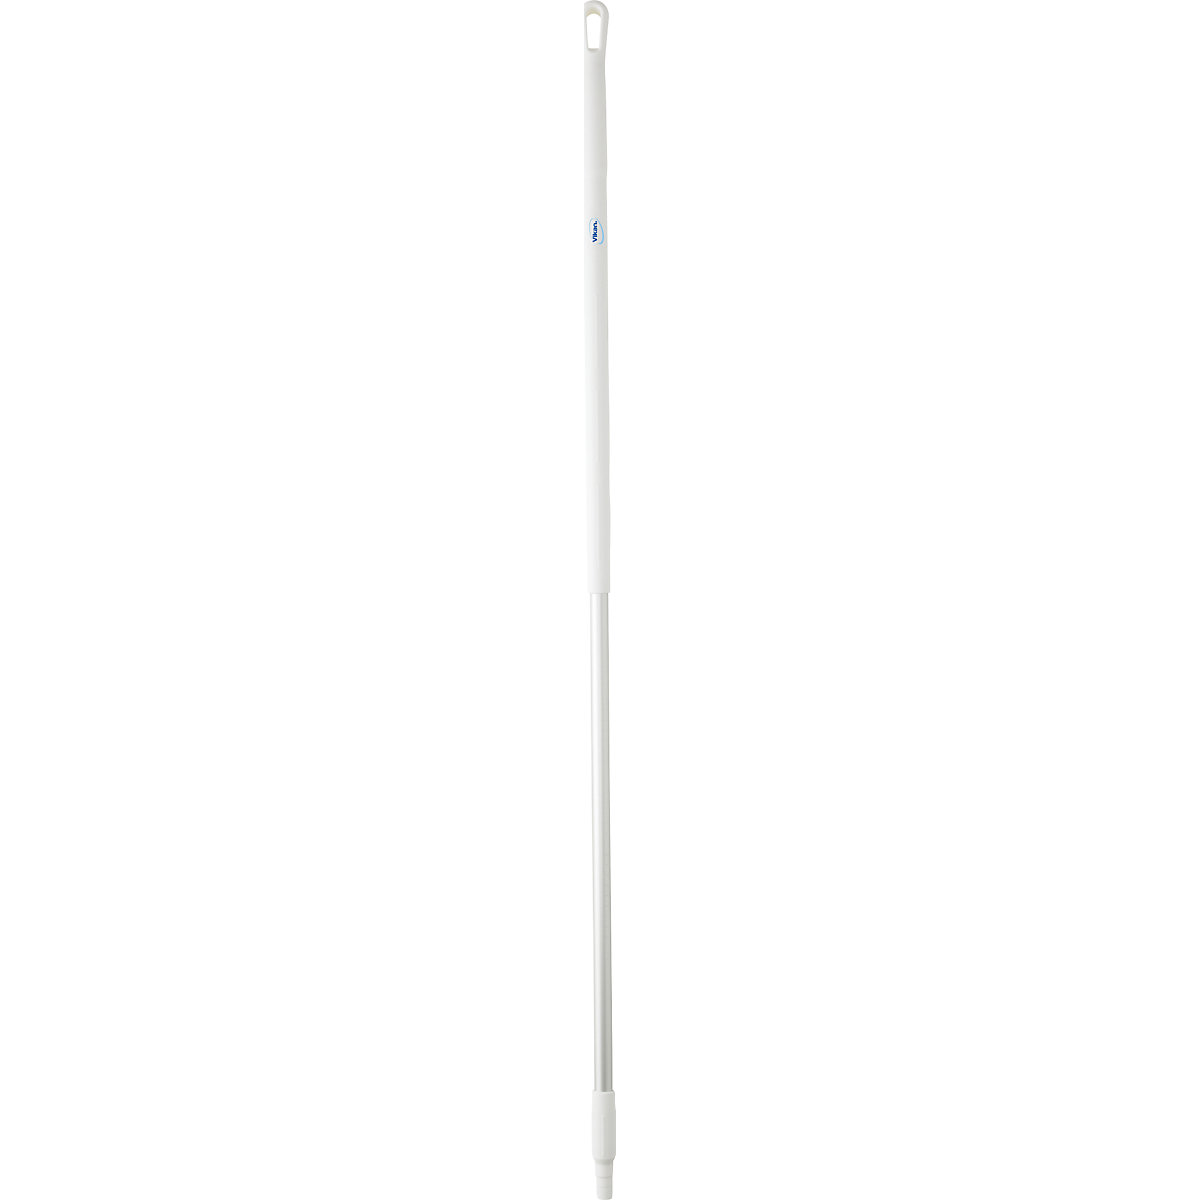 Aluminijska drška, ergonomična – Vikan, Ø 31 mm, dužina 1510 mm, pak. 10 kom., u bijeloj boji-14